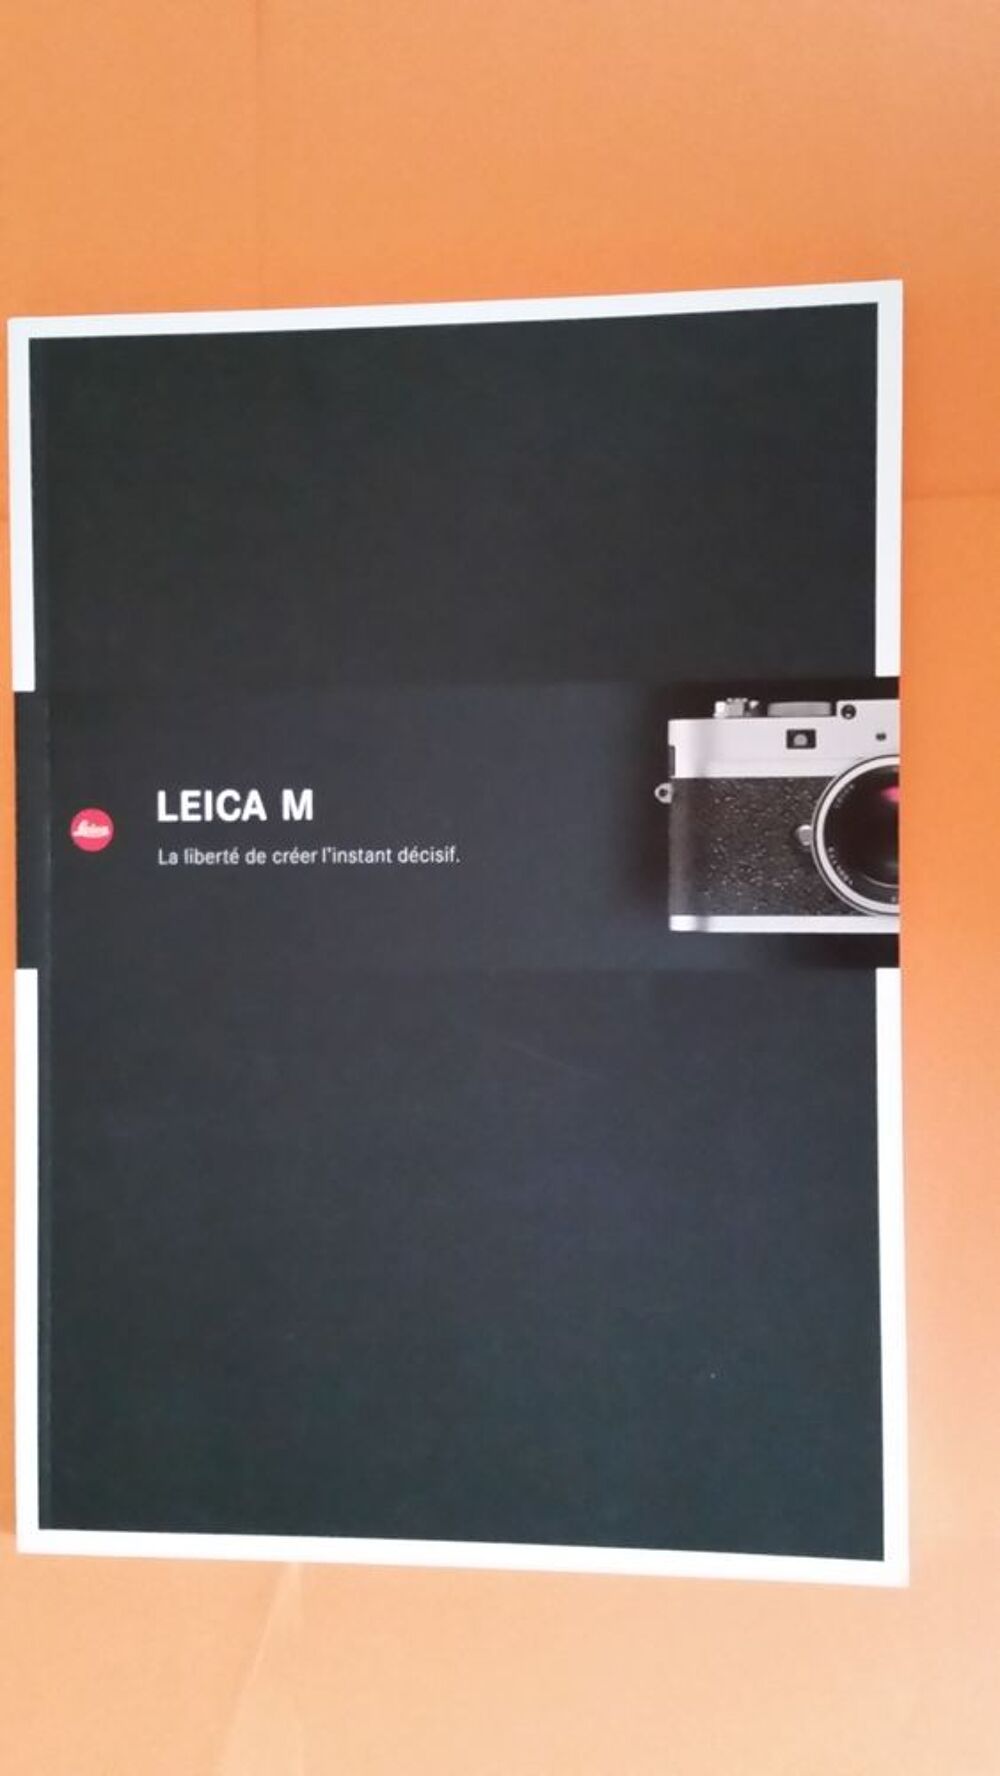 LEICA M Photos/Video/TV